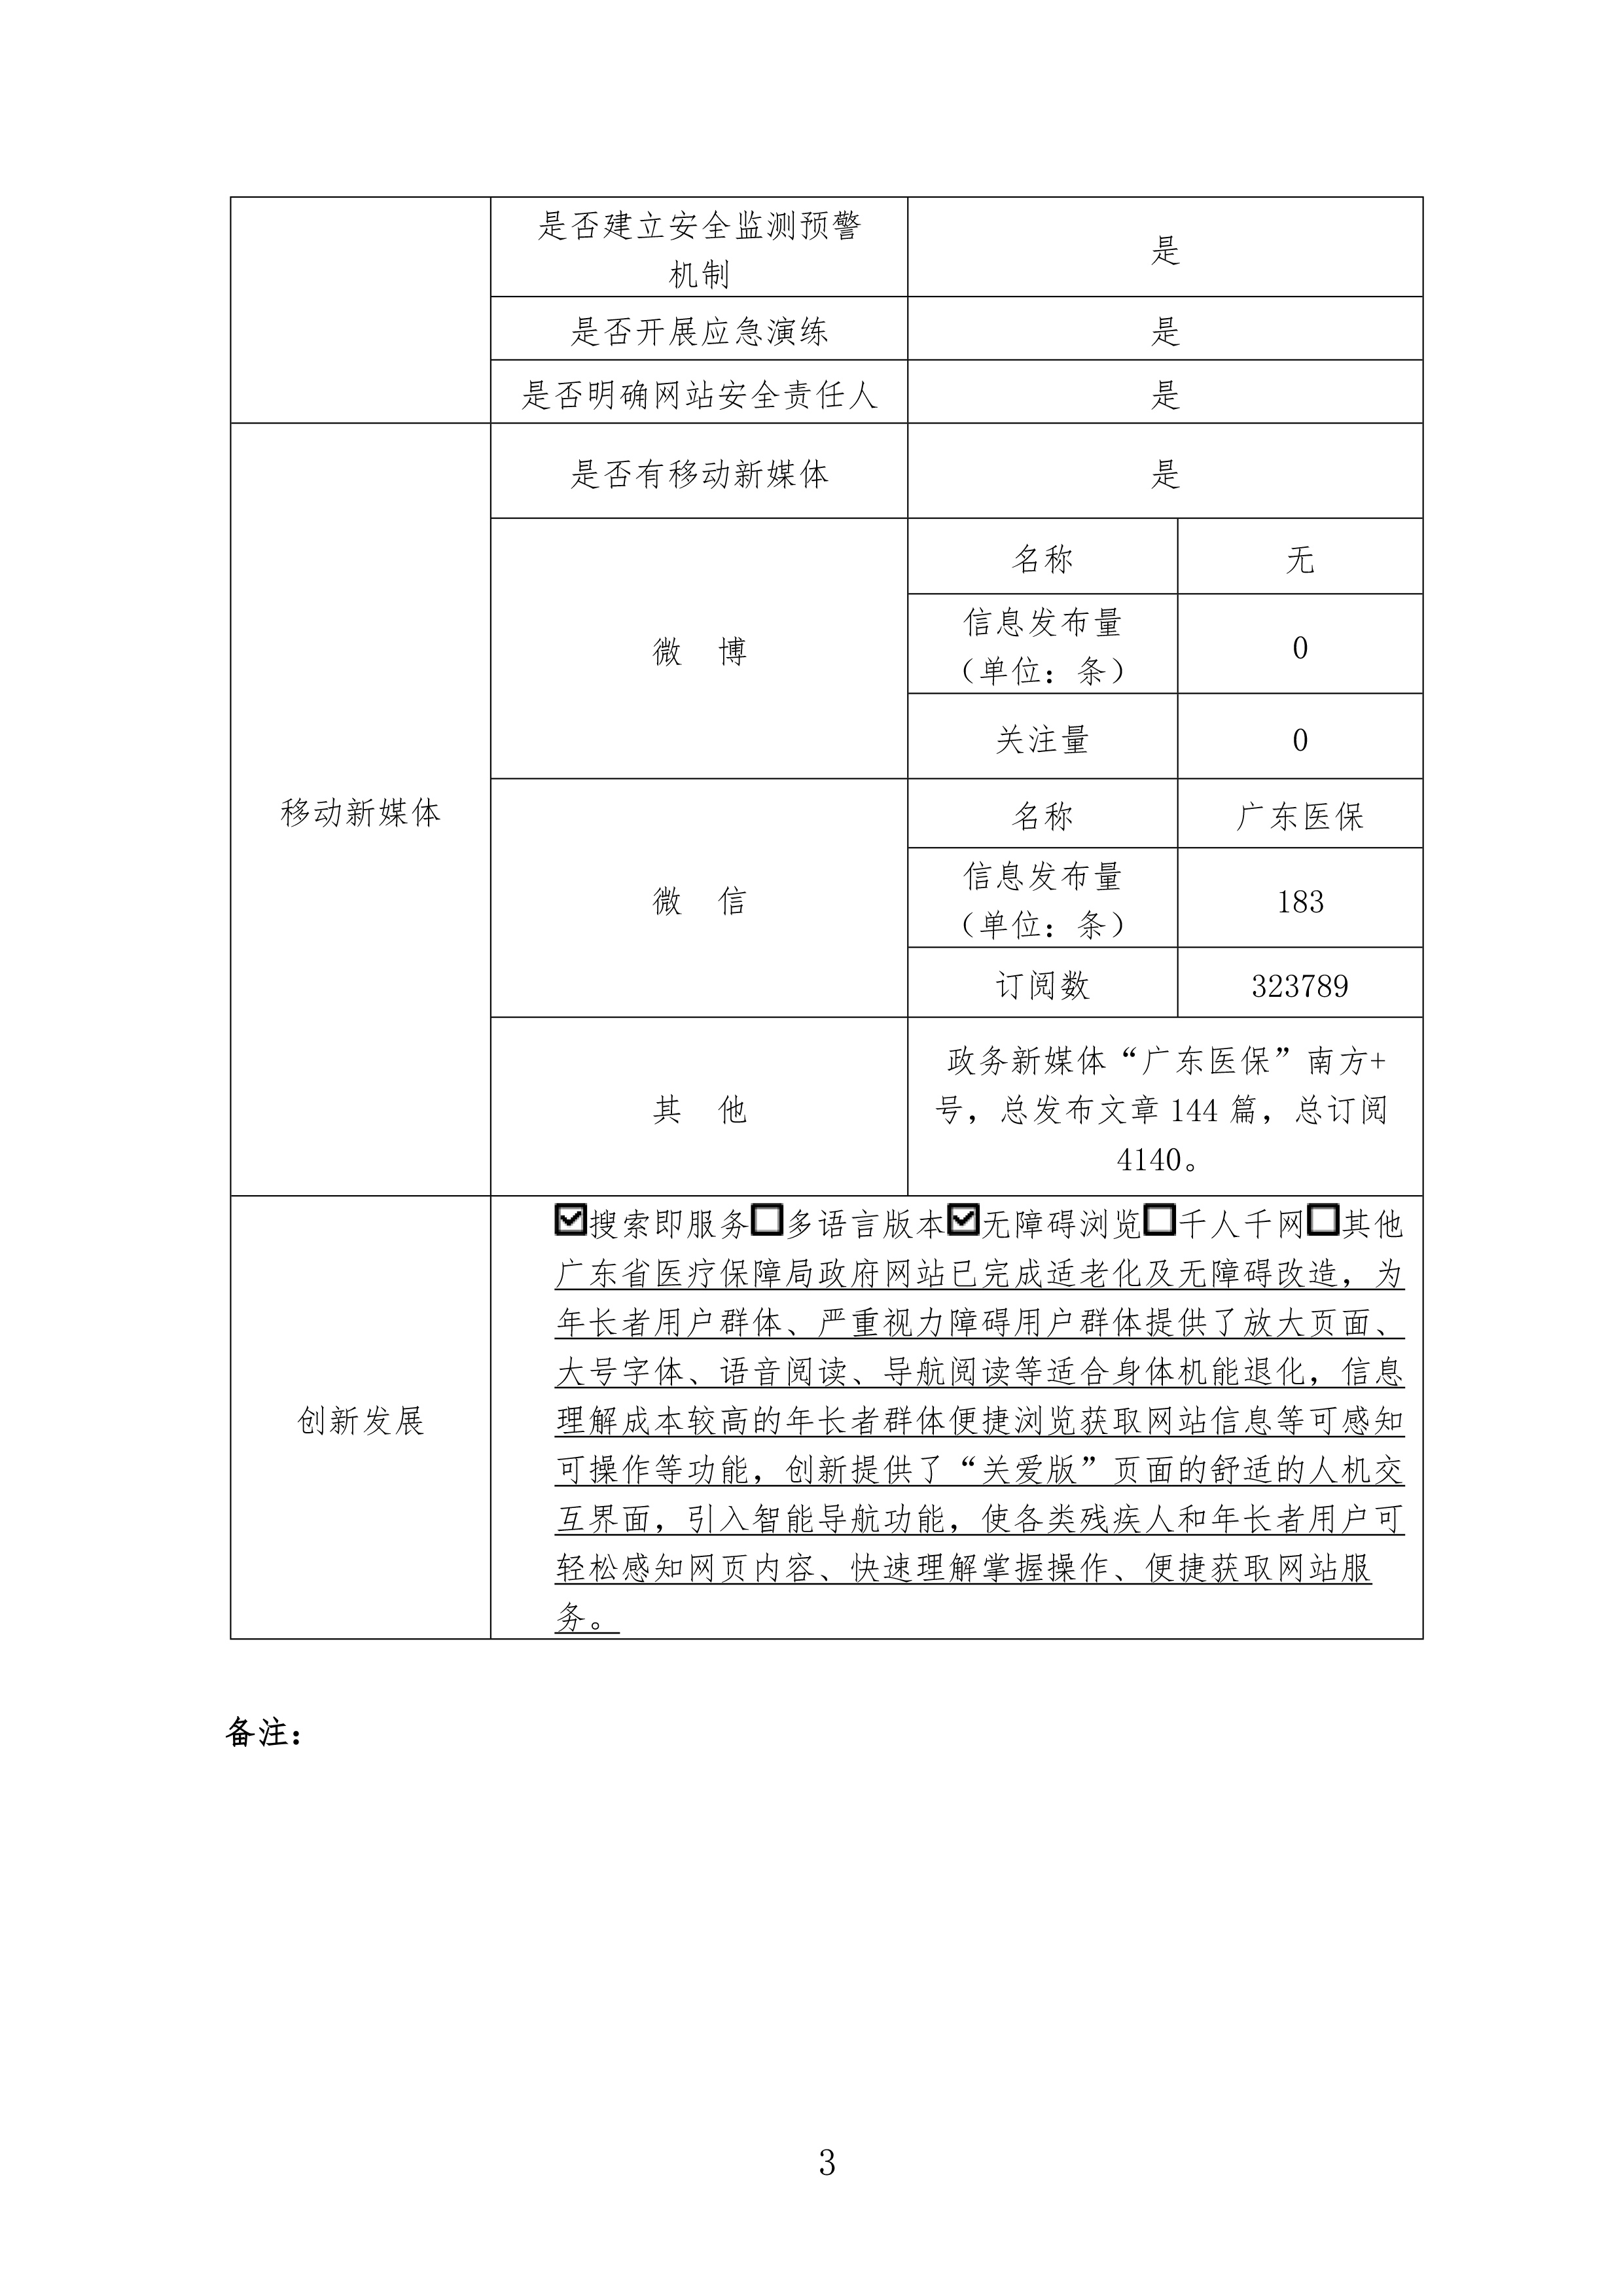 广东省医疗保障局政府网站年度工作报表-3.jpg